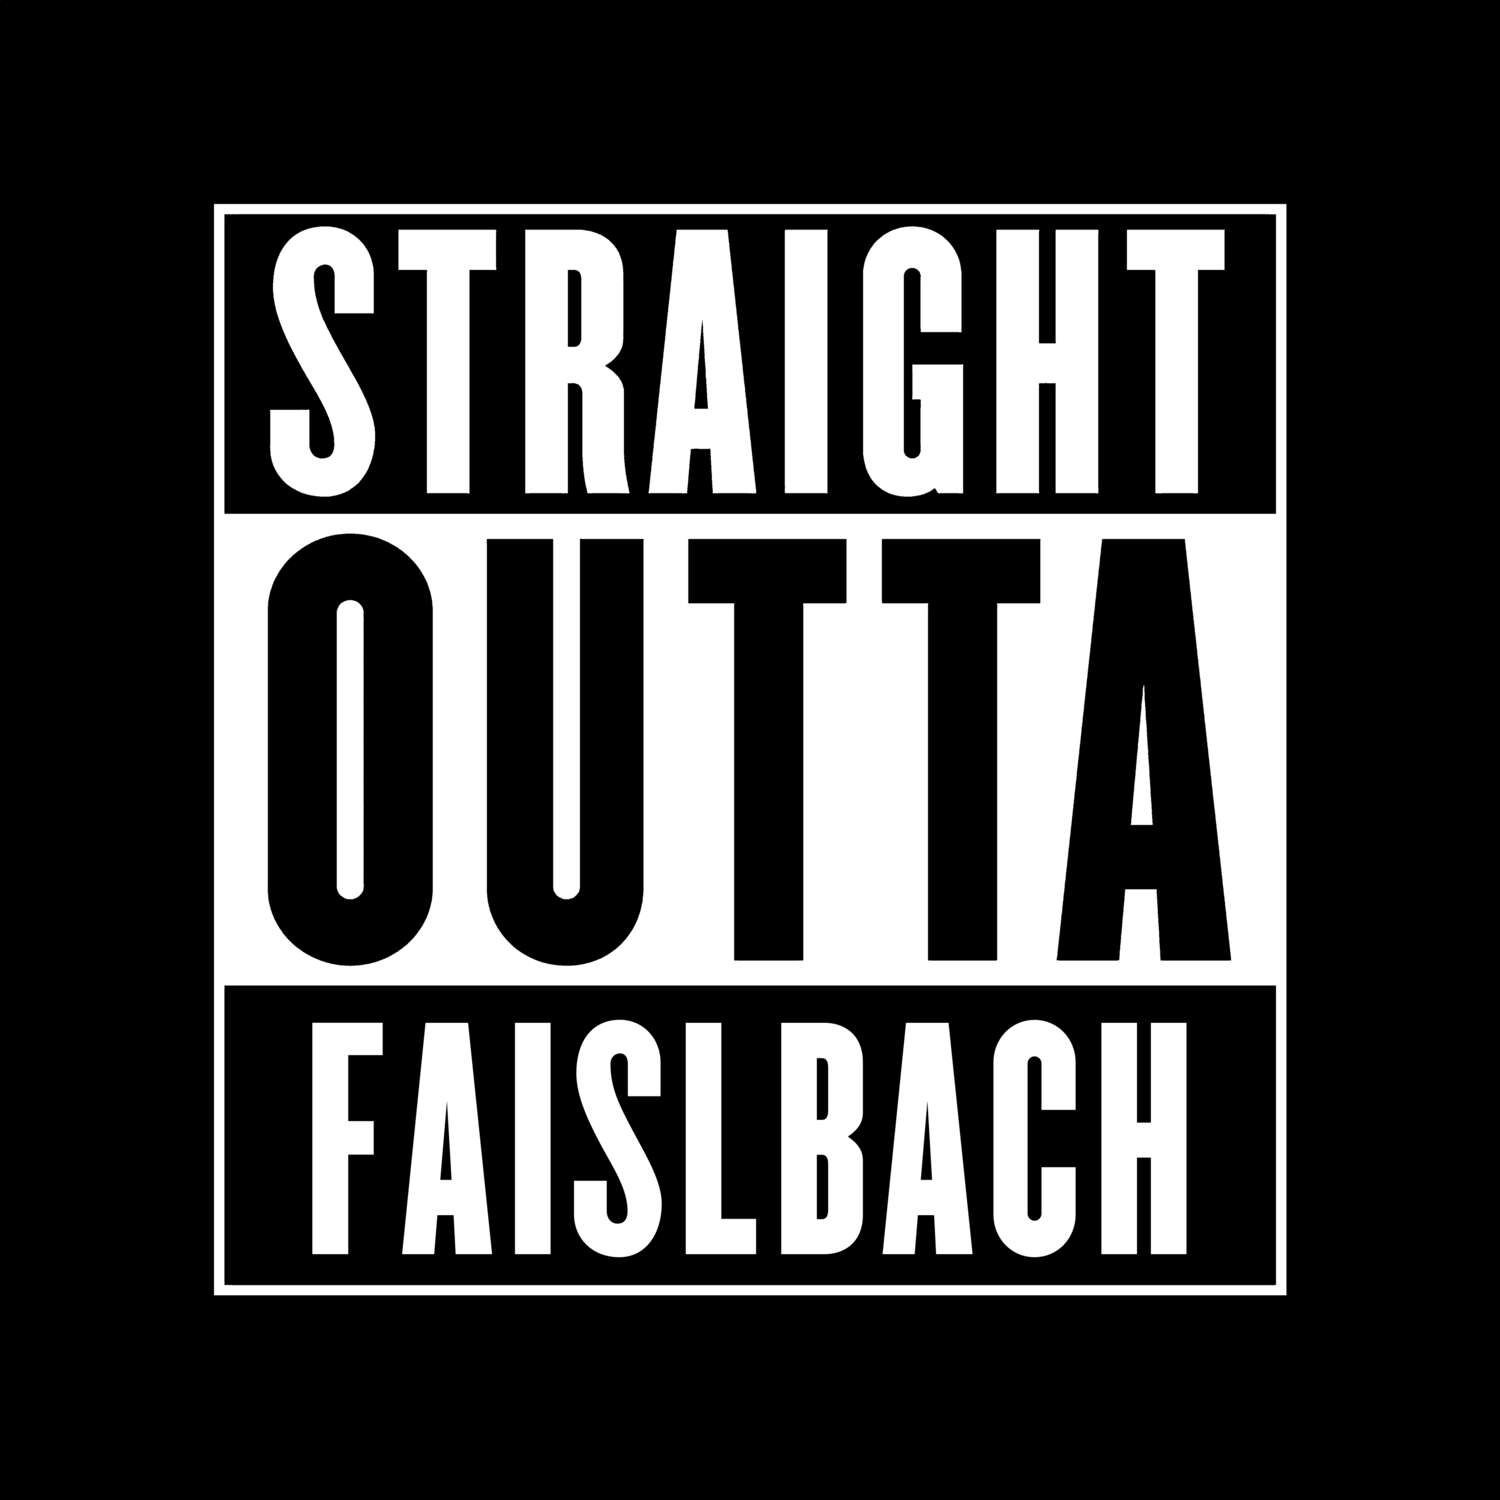 Faislbach T-Shirt »Straight Outta«